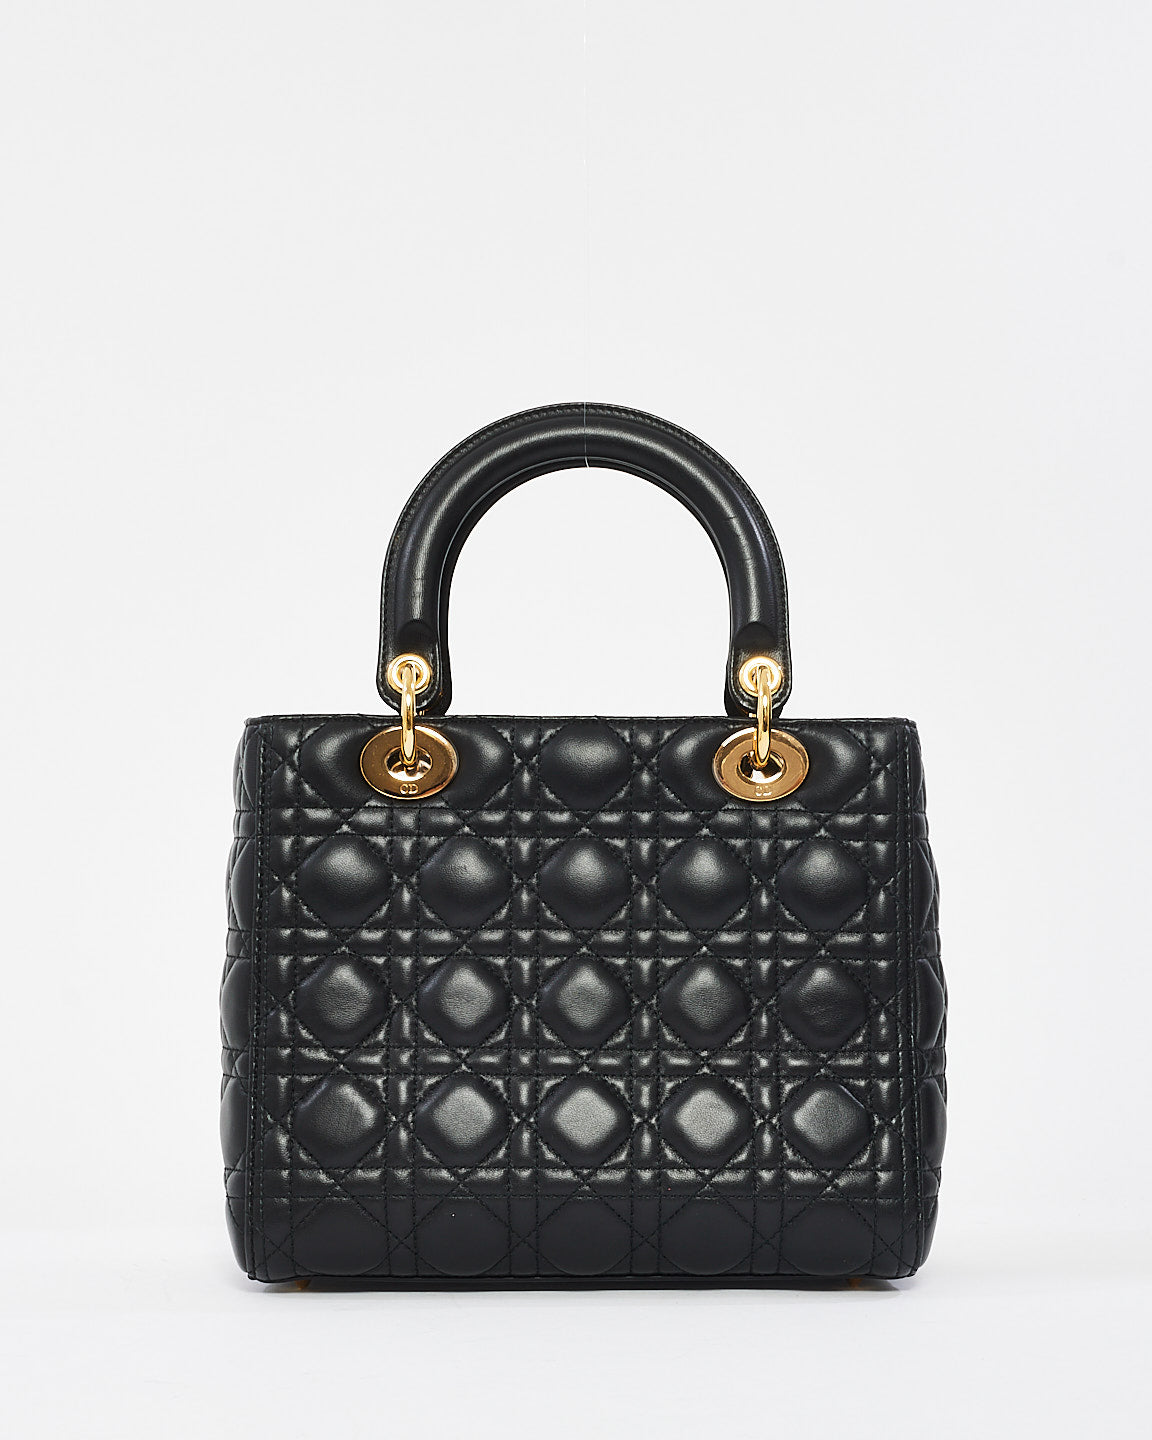 Dior Black Cannage Leather Medium Lady Dior Bag